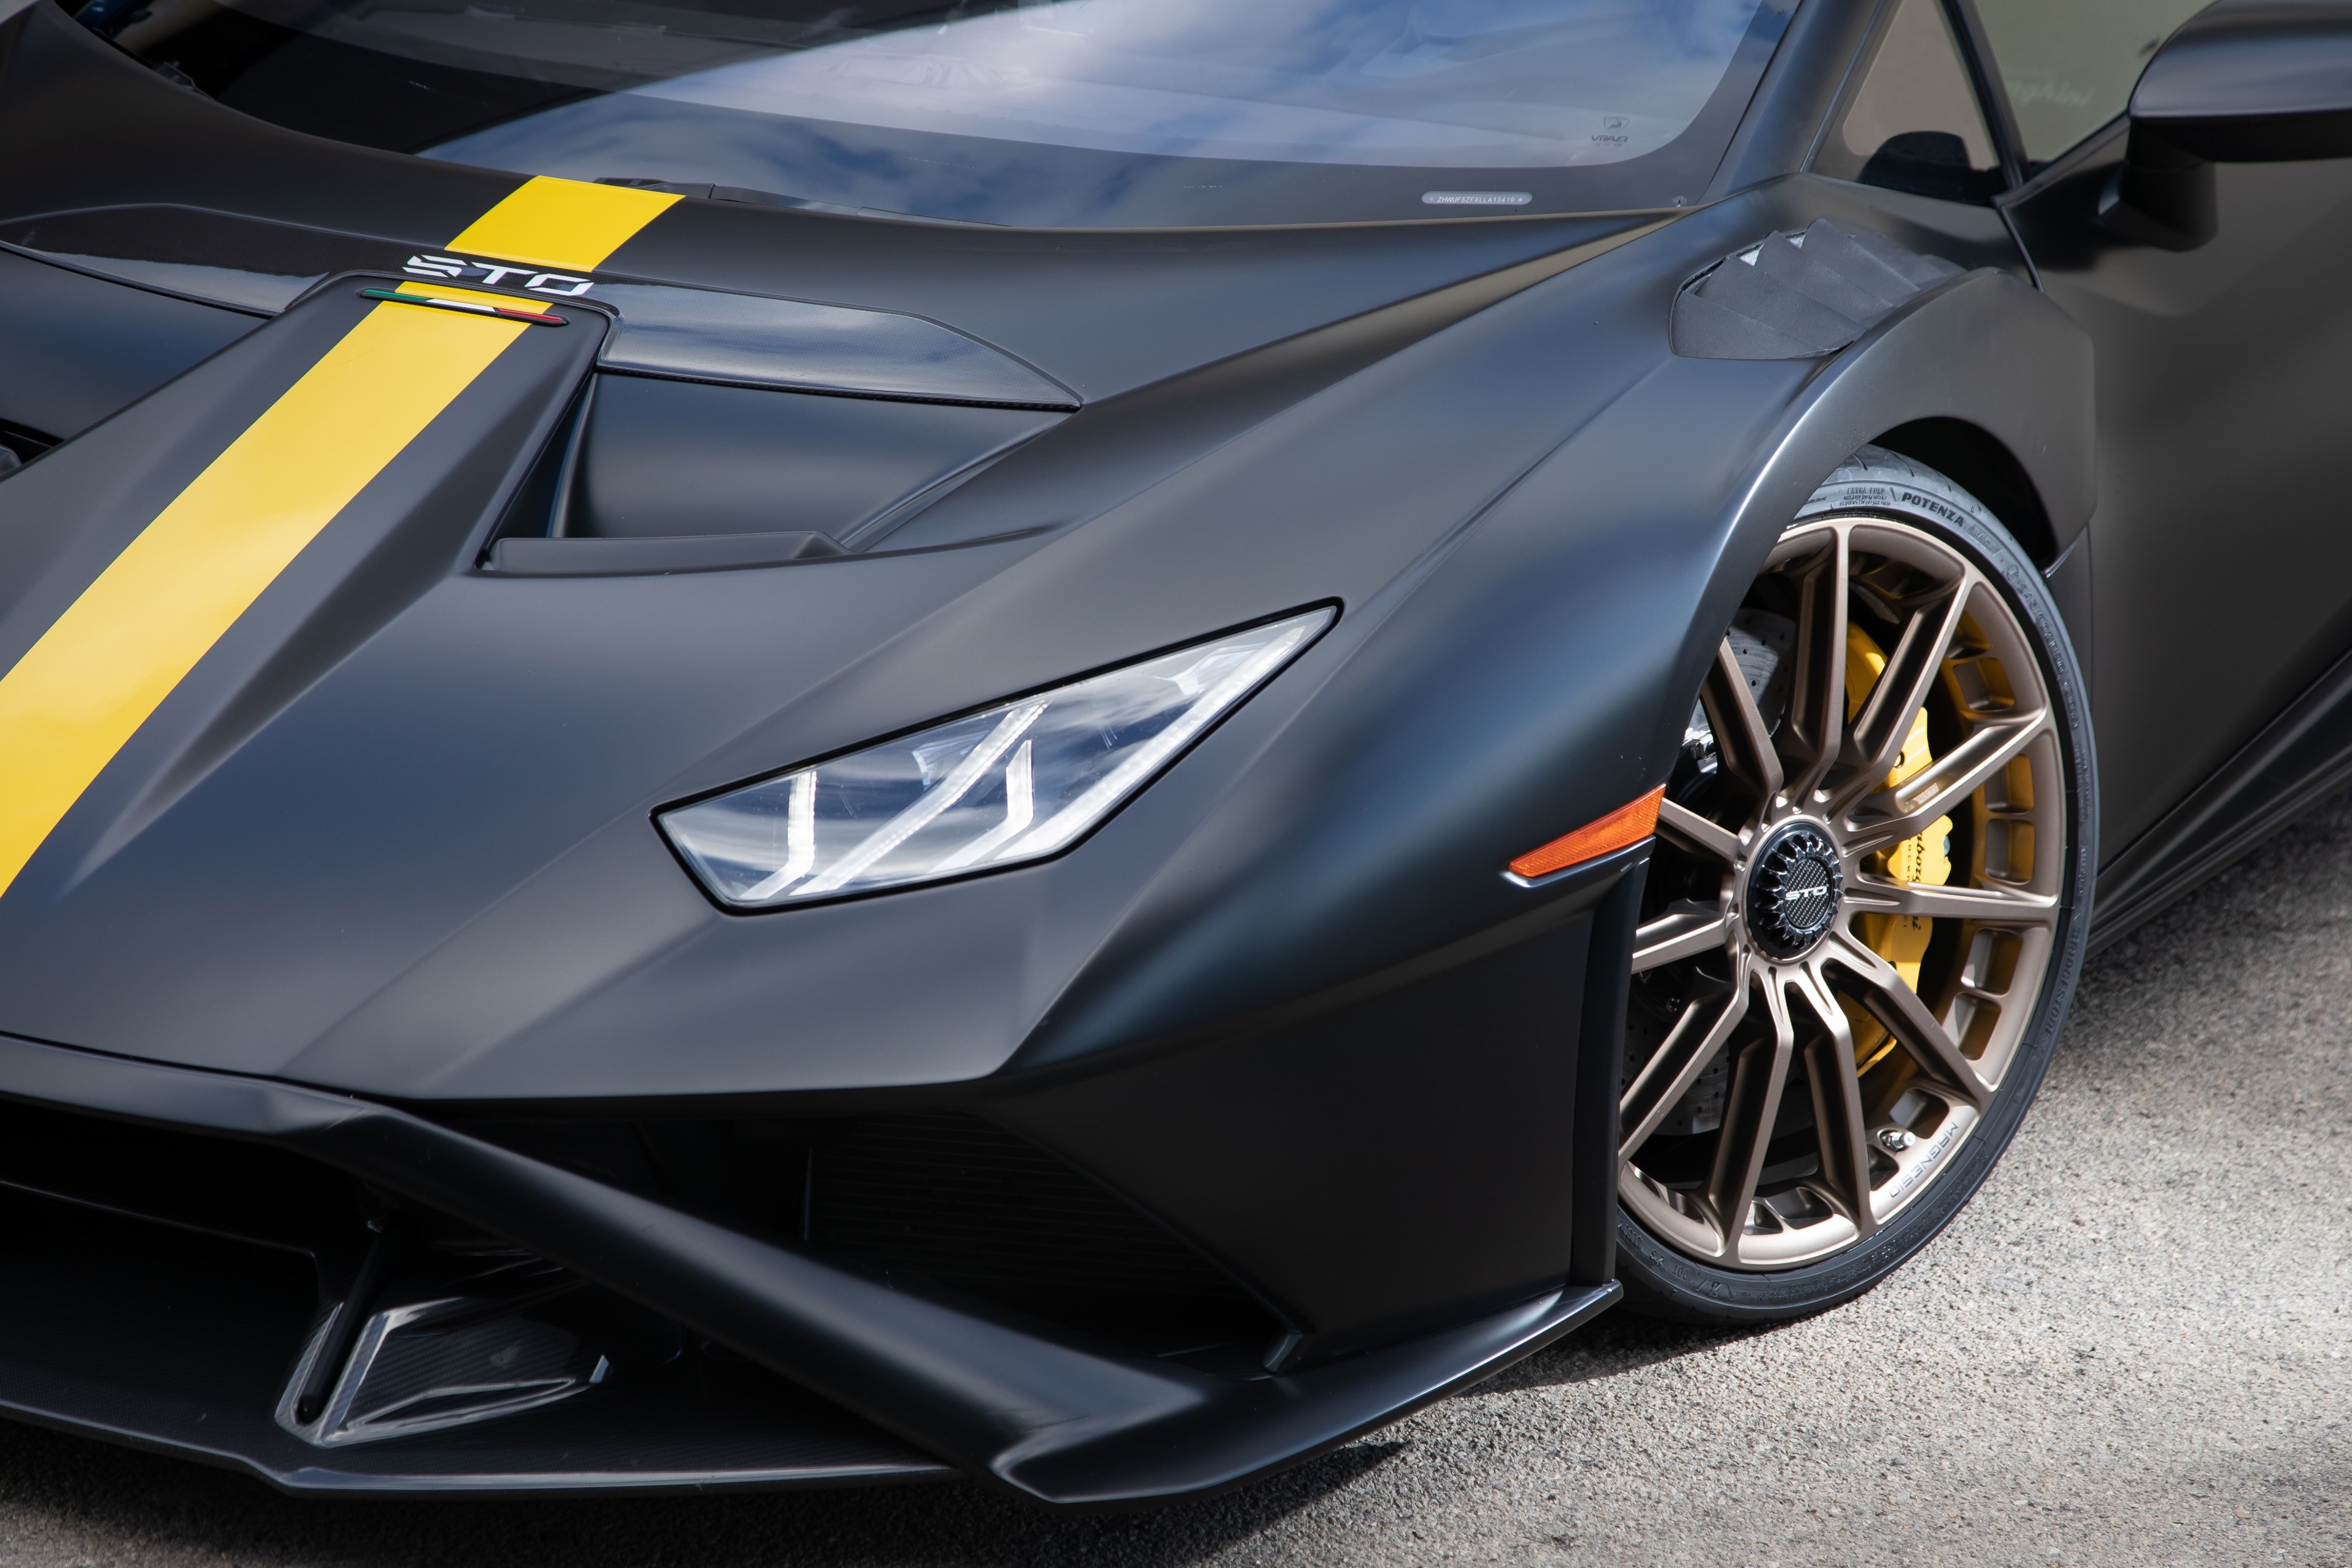 Pneus Bridgestone para Lamborghini